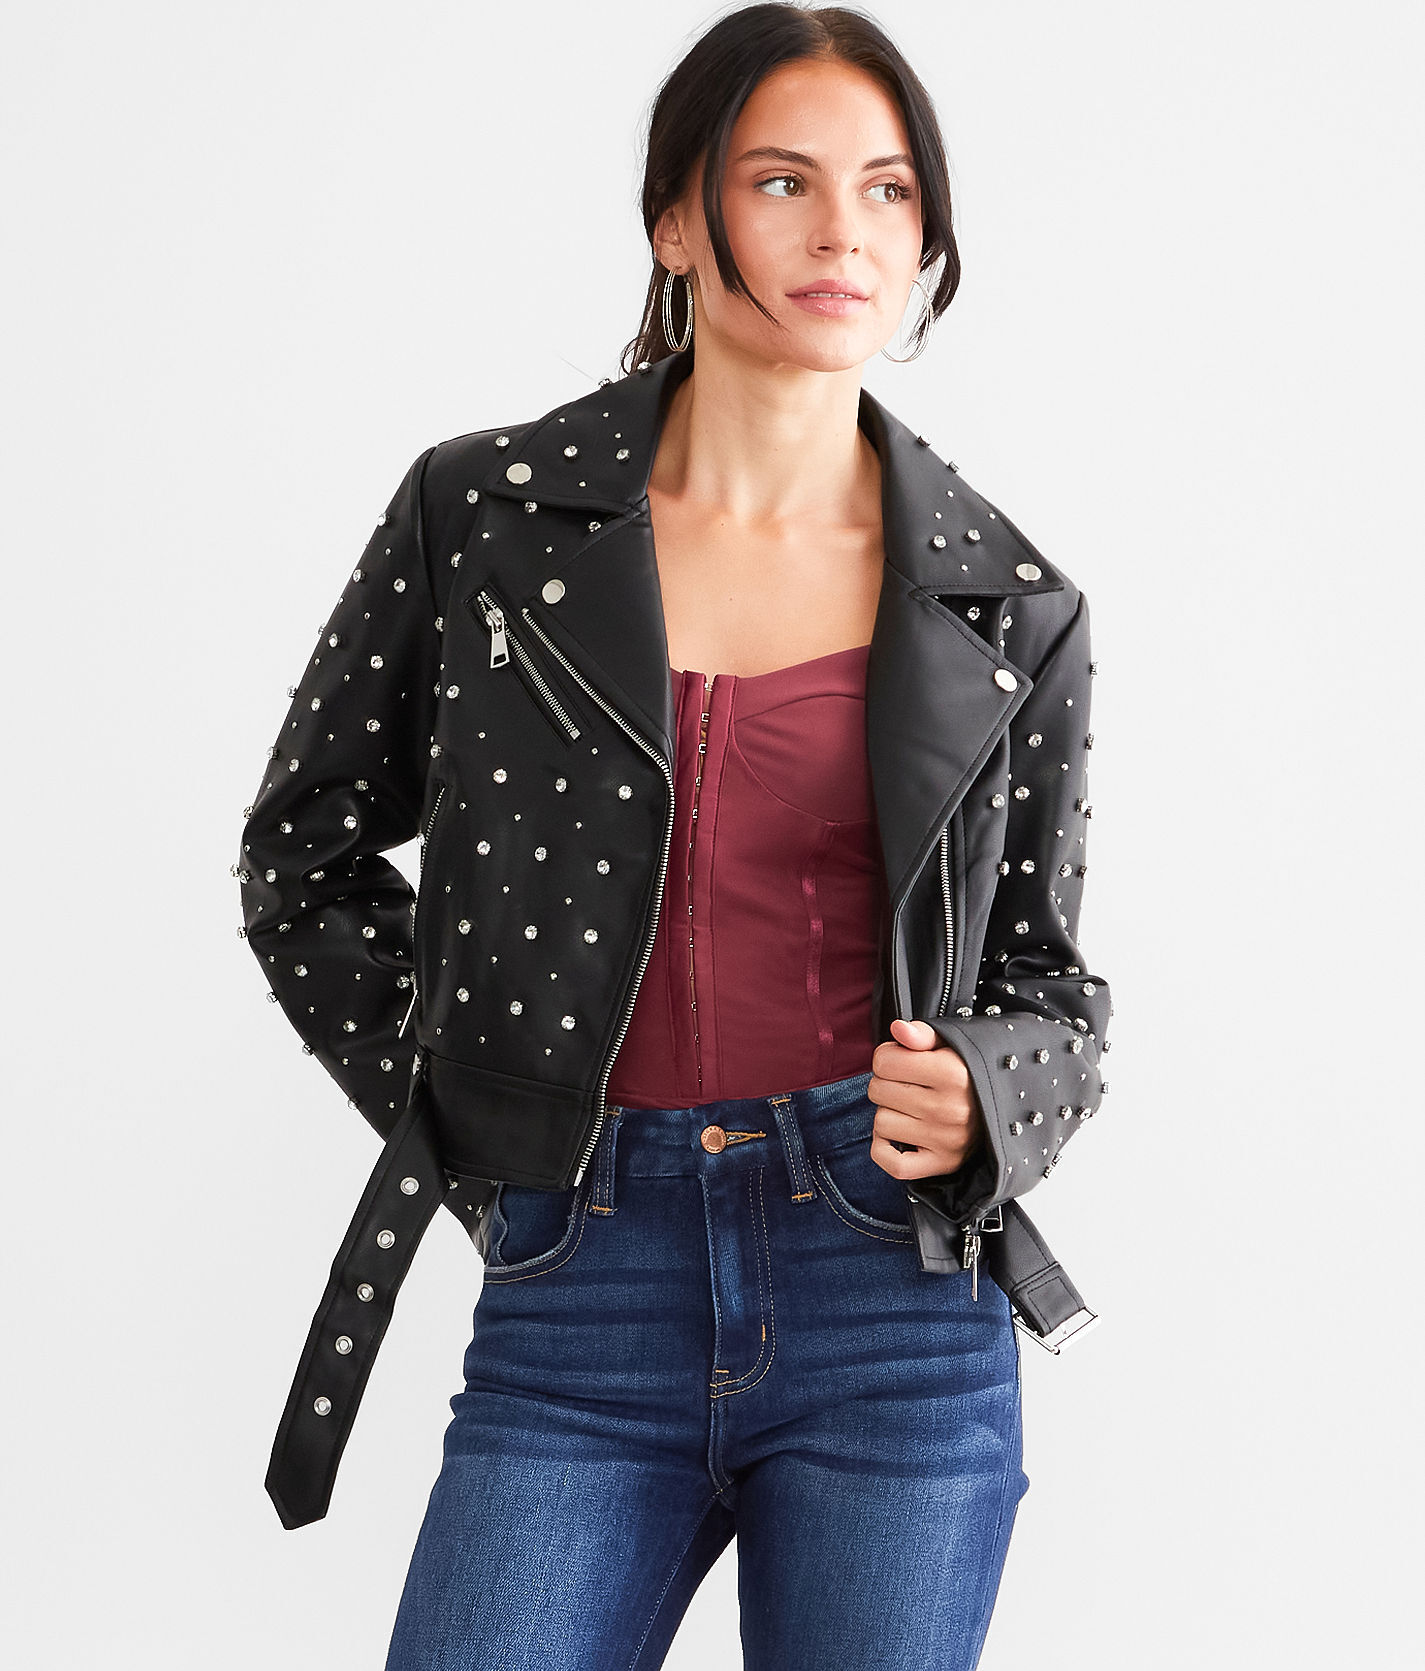 Azalea Wang Glitz Cropped Faux Leather Jacket  - Black - female - Size: Medium